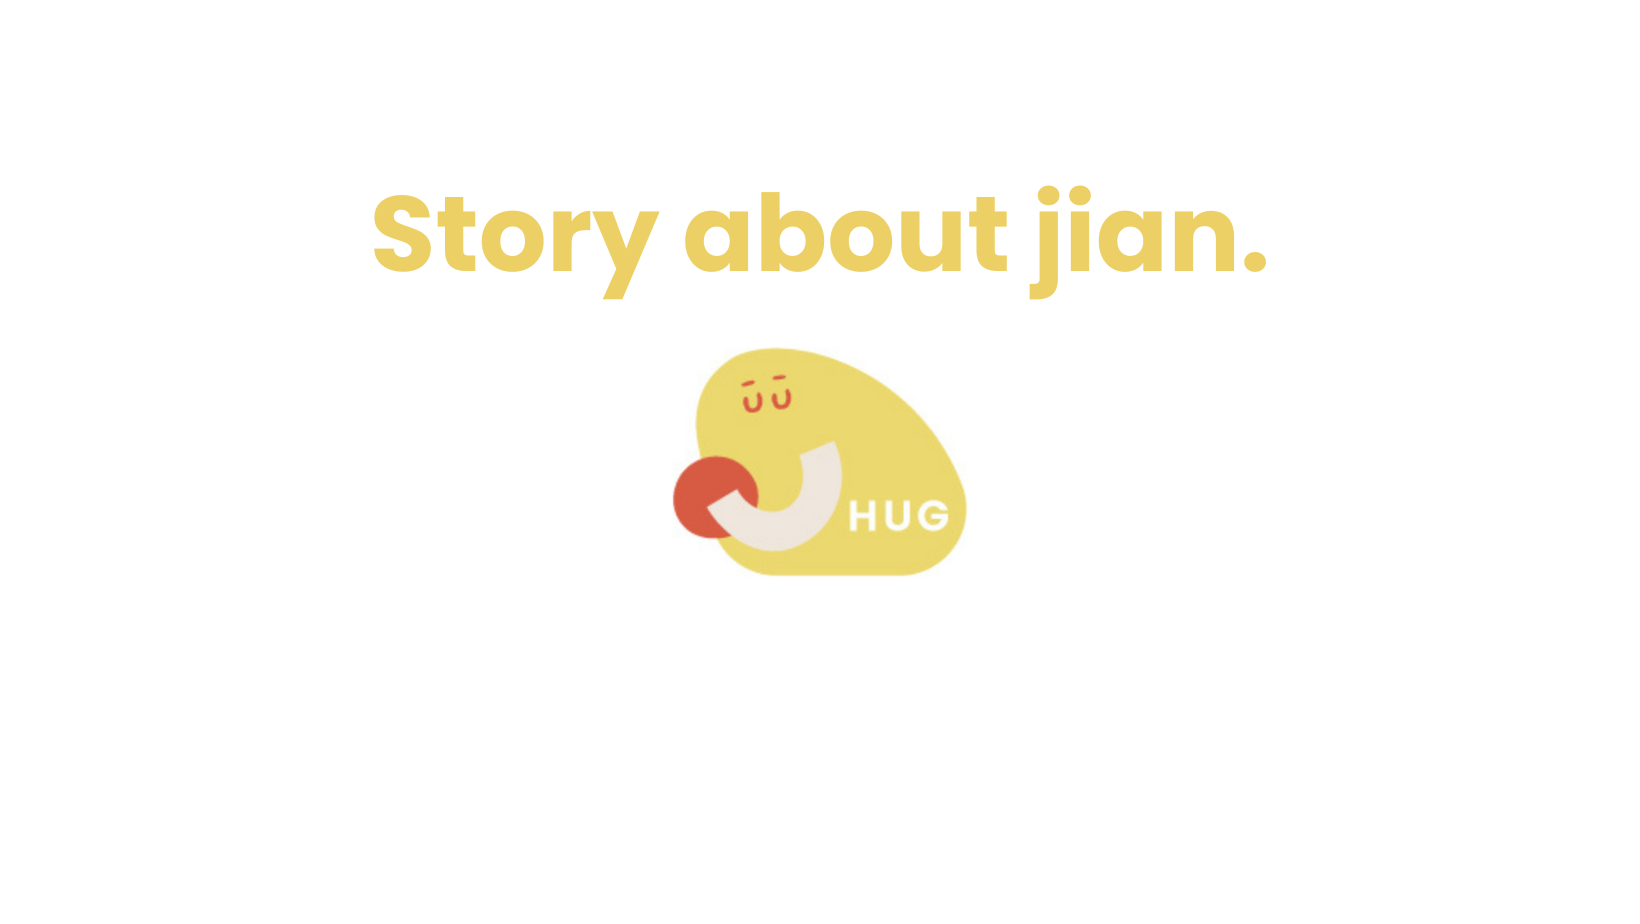 Story about jian.